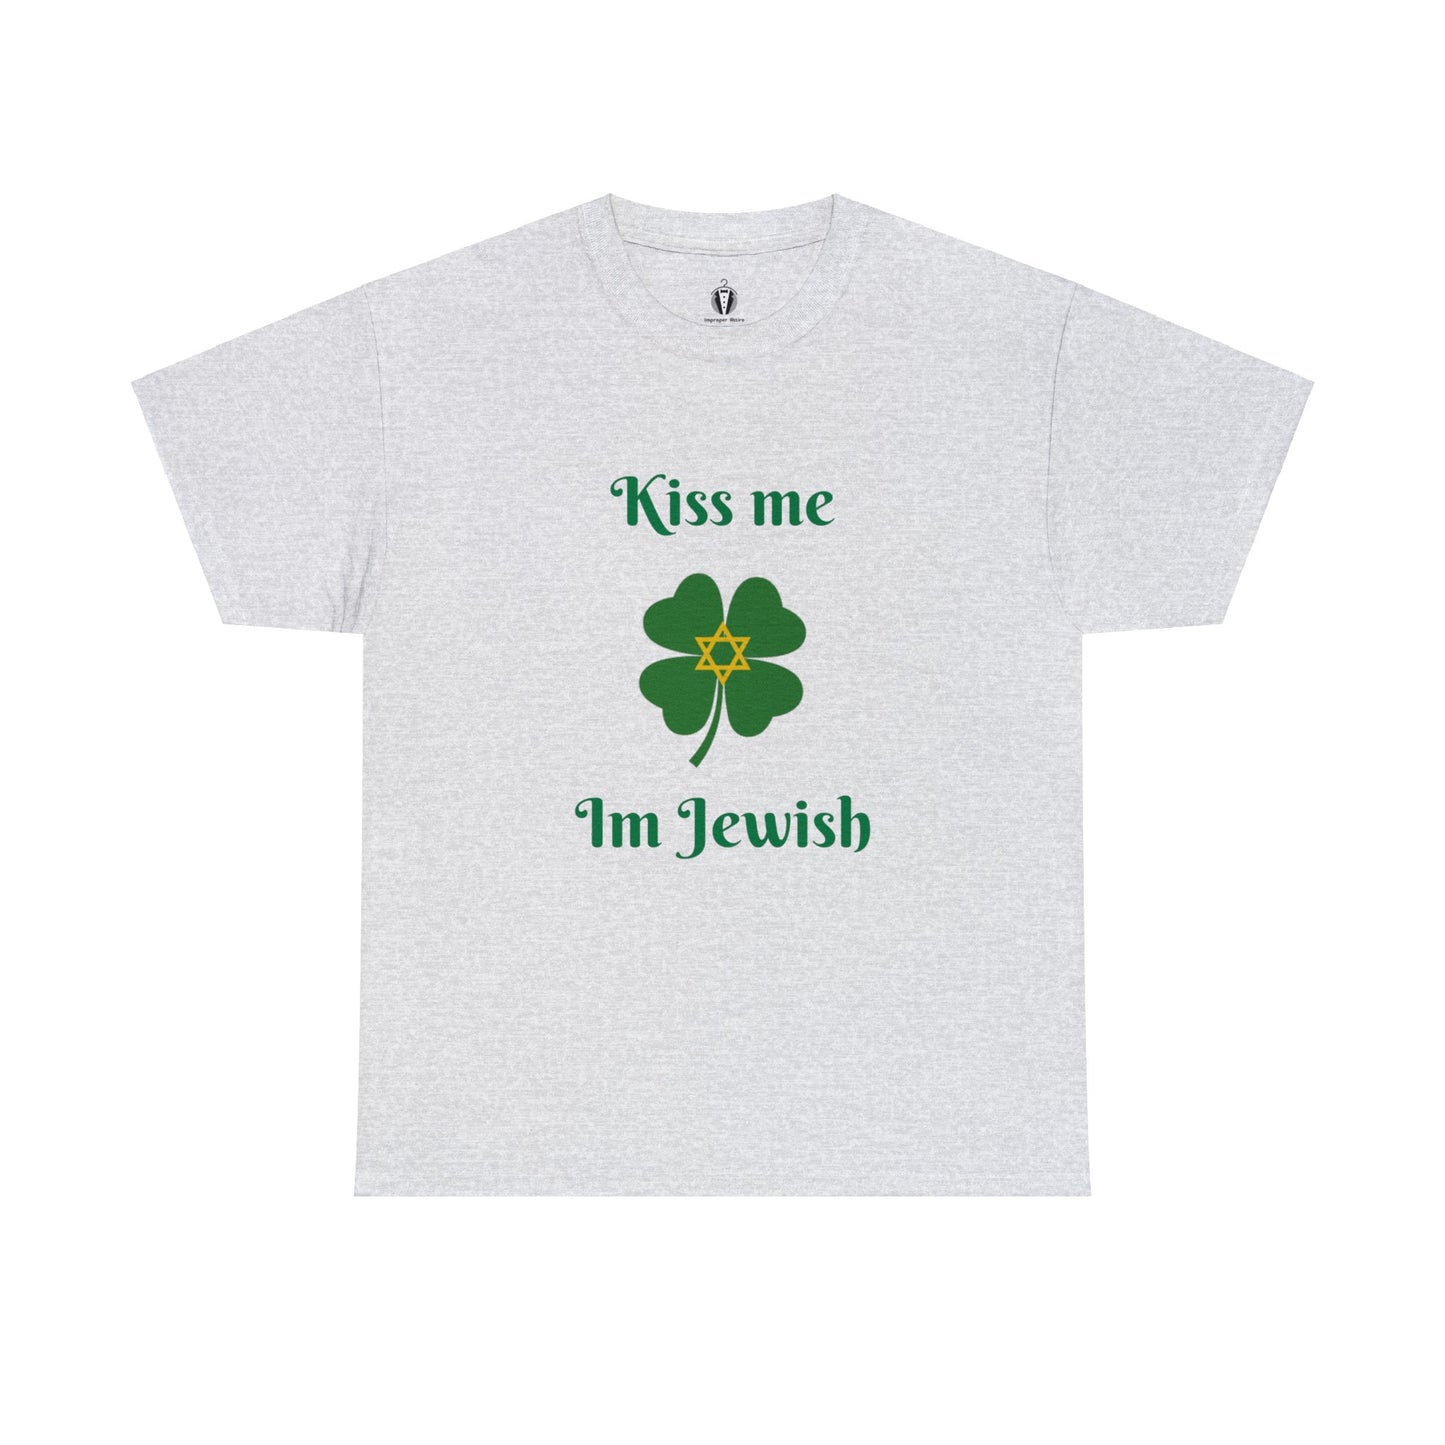 "Kiss me I'm Jewish" - Tee